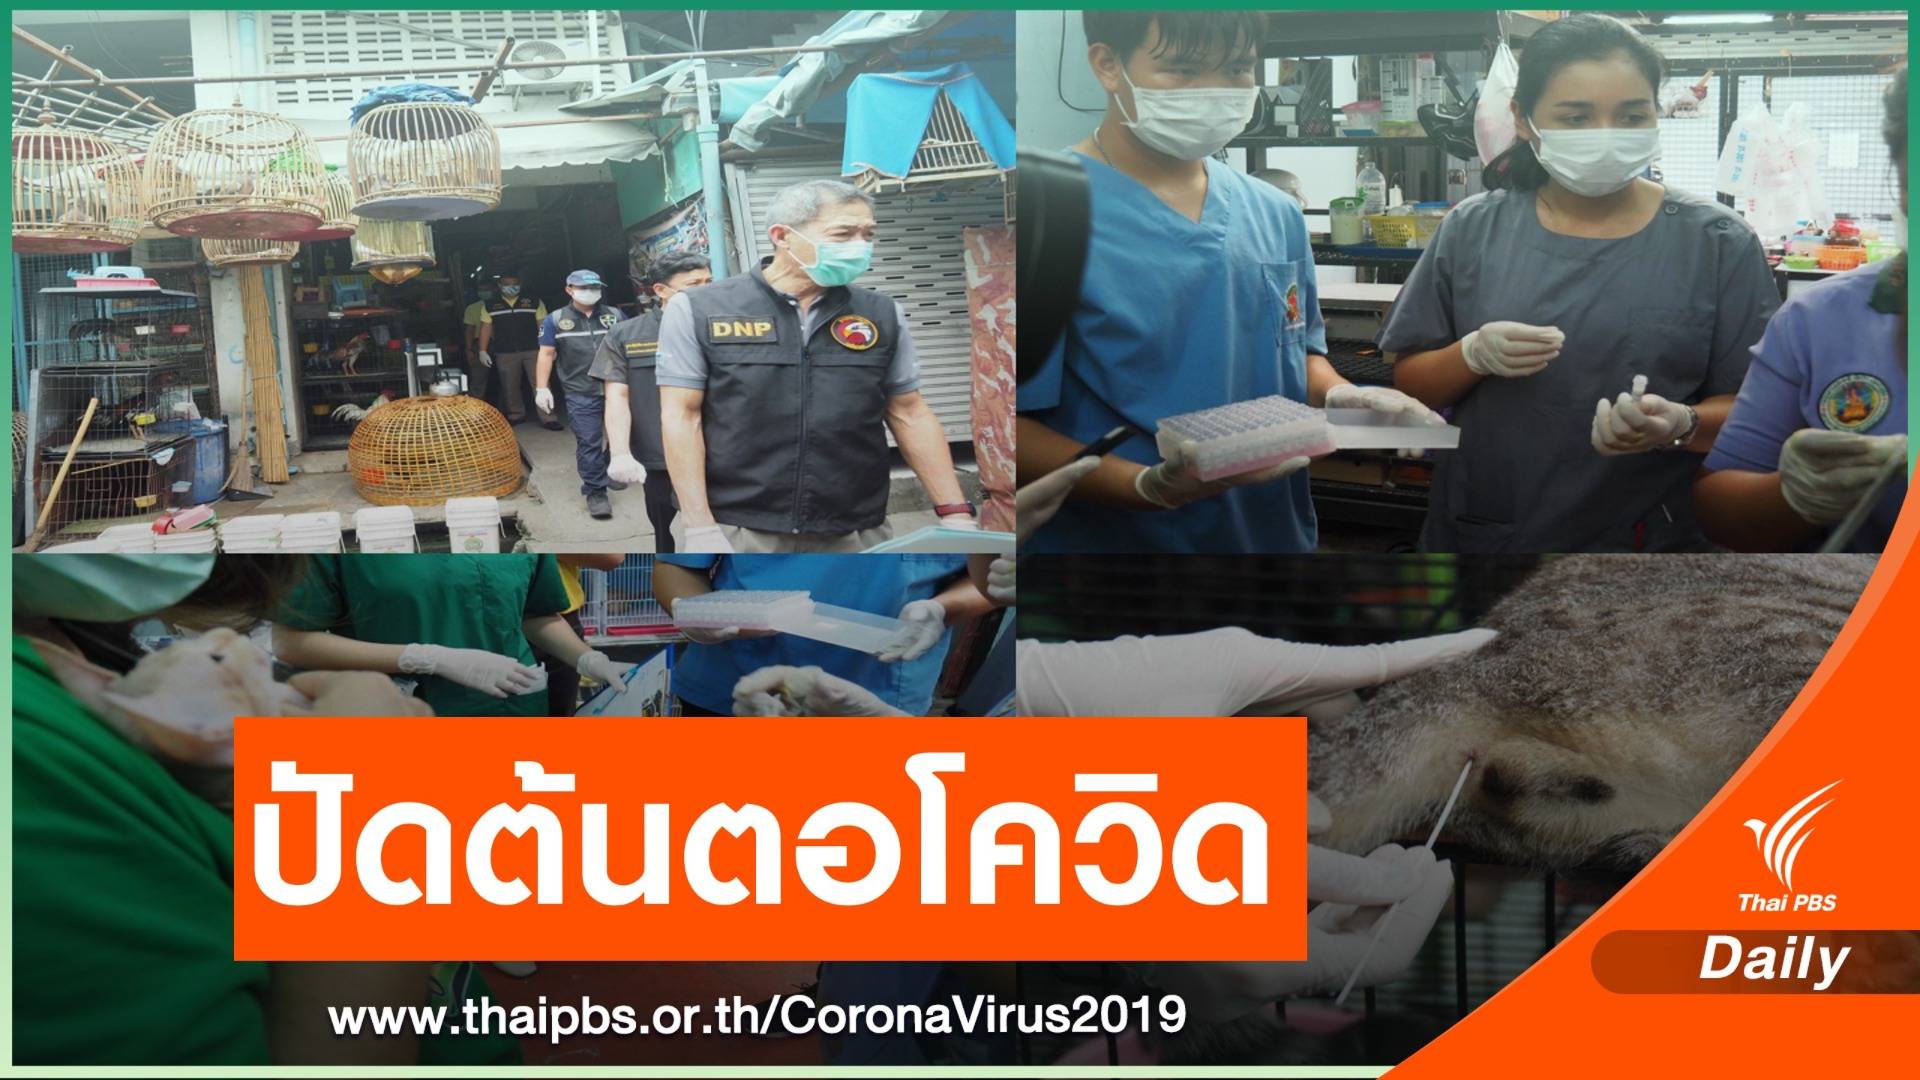 โต้ข่าว "จตุจักร-ค้างคาวไทย" แหล่งแพร่ COVID-19 ก่อนอู่ฮั่น